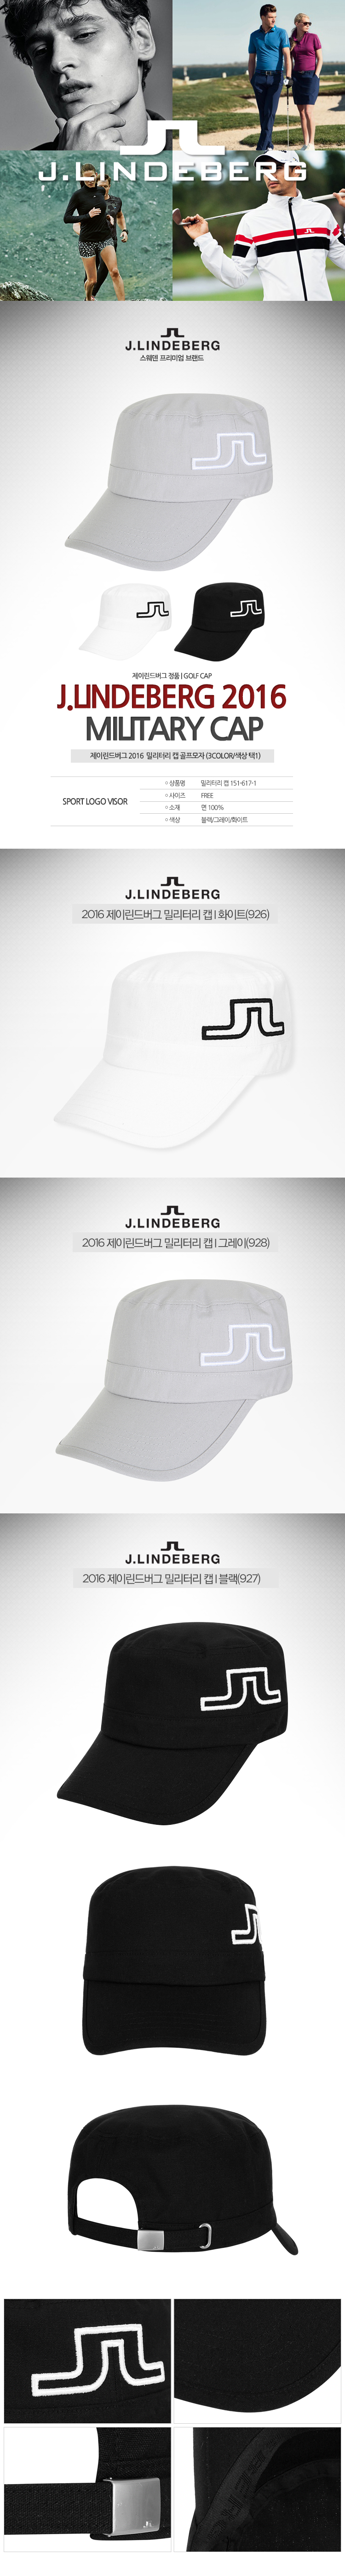 jlindeberg_military_cap.jpg